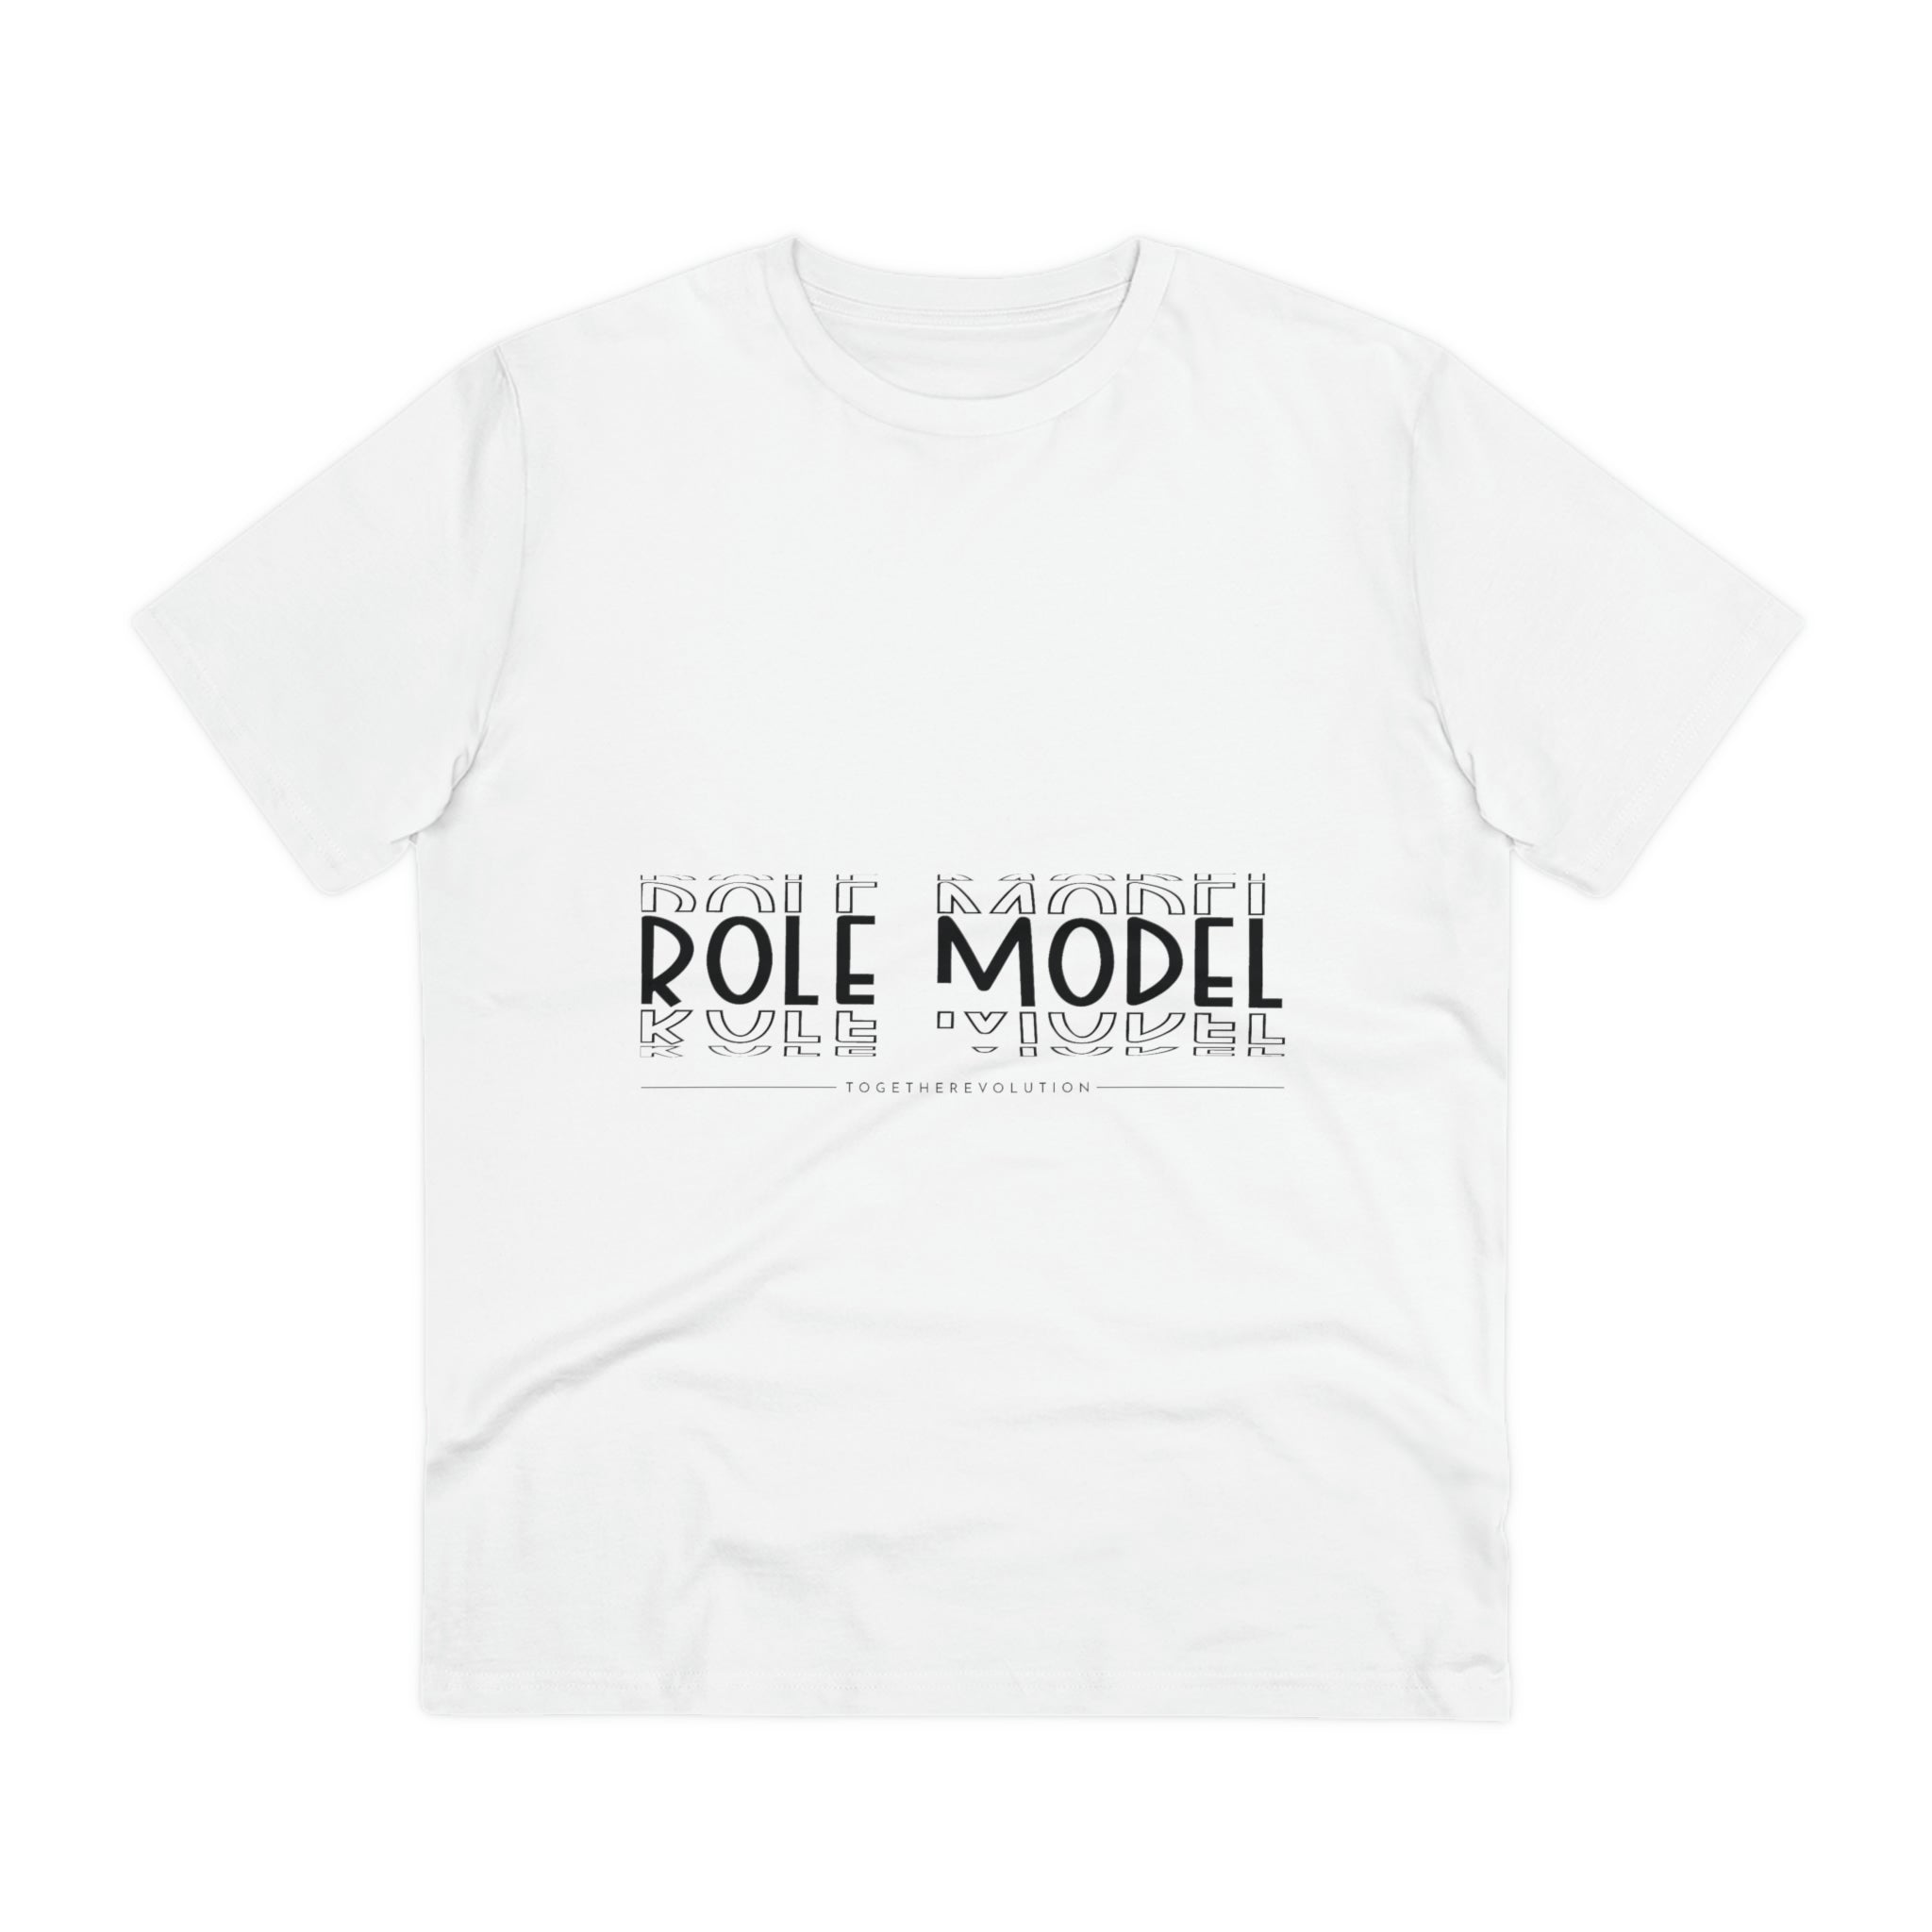 Role Model T-shirt